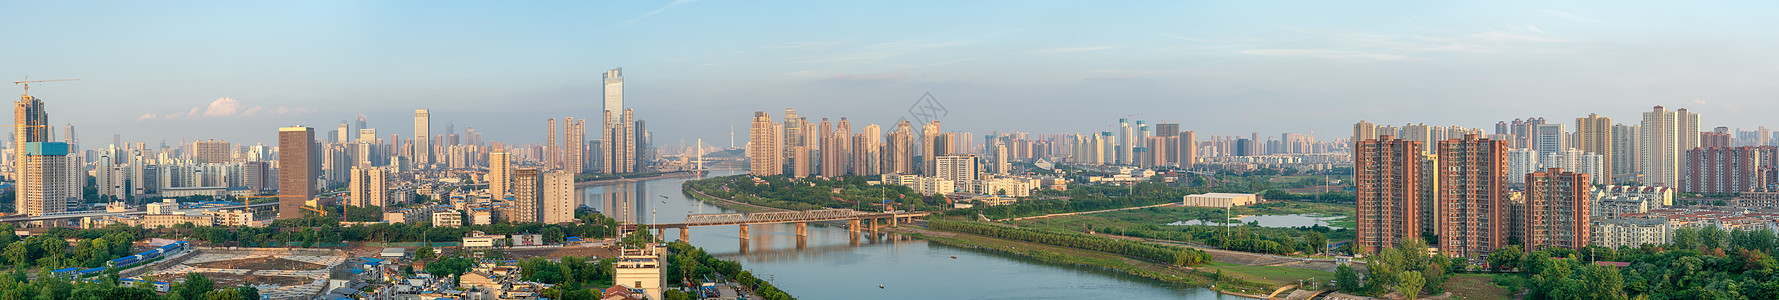 酒店高层俯瞰城市江景全景长片图片